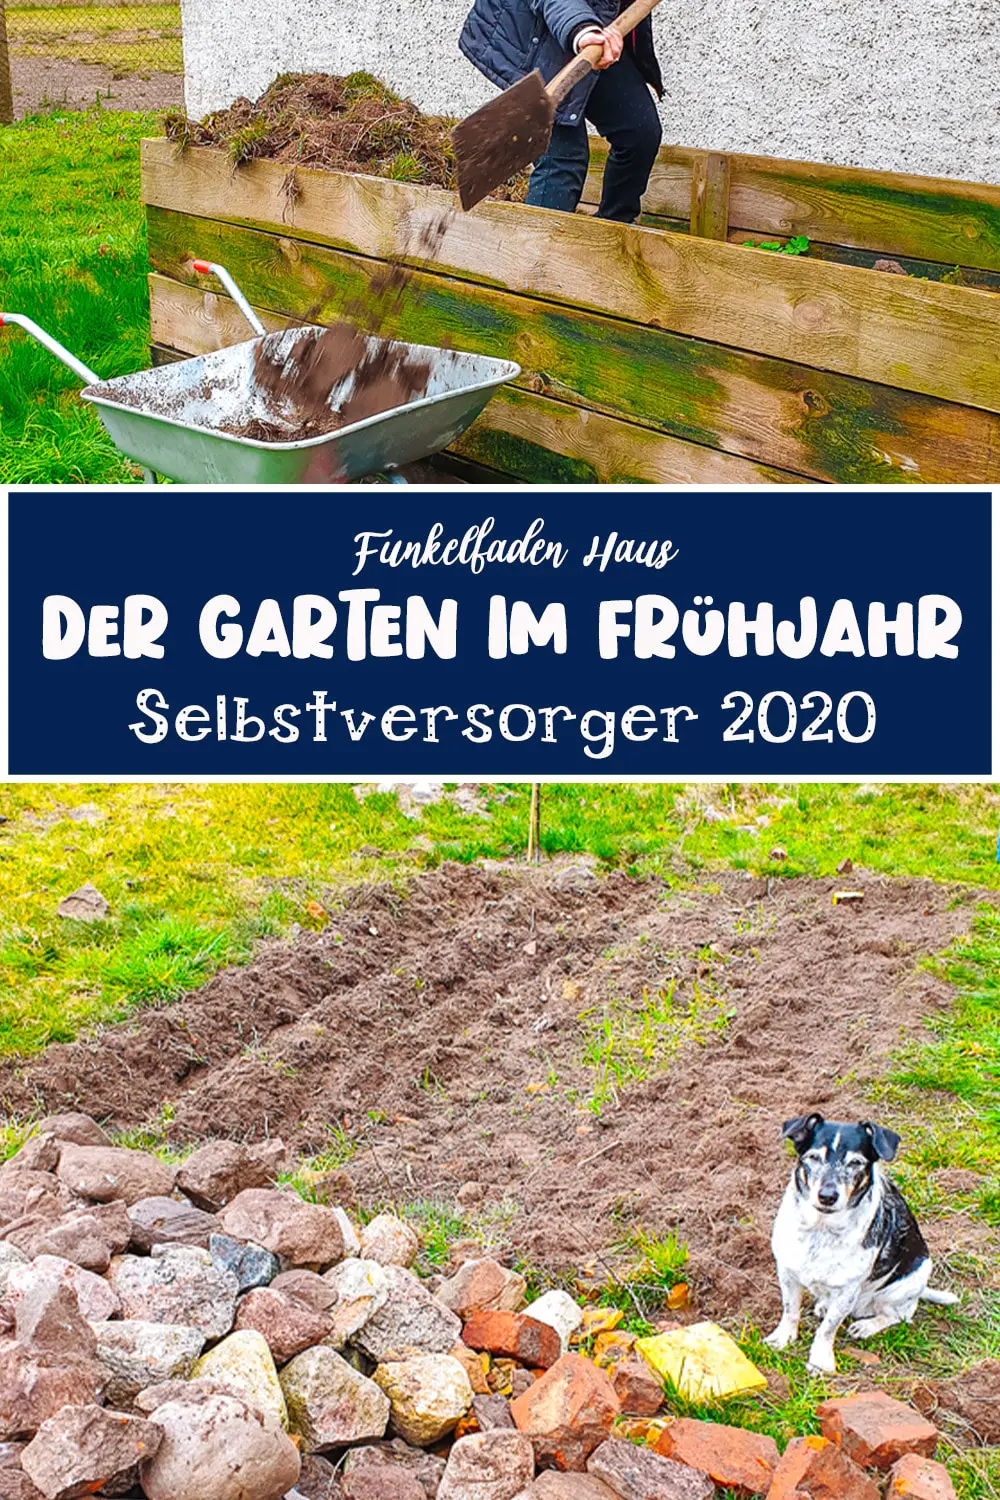 Gartenarbeiten im Frühjahr - Der Garten im Frühjahr 2020 Selbstversorger Funkelfaden Haus